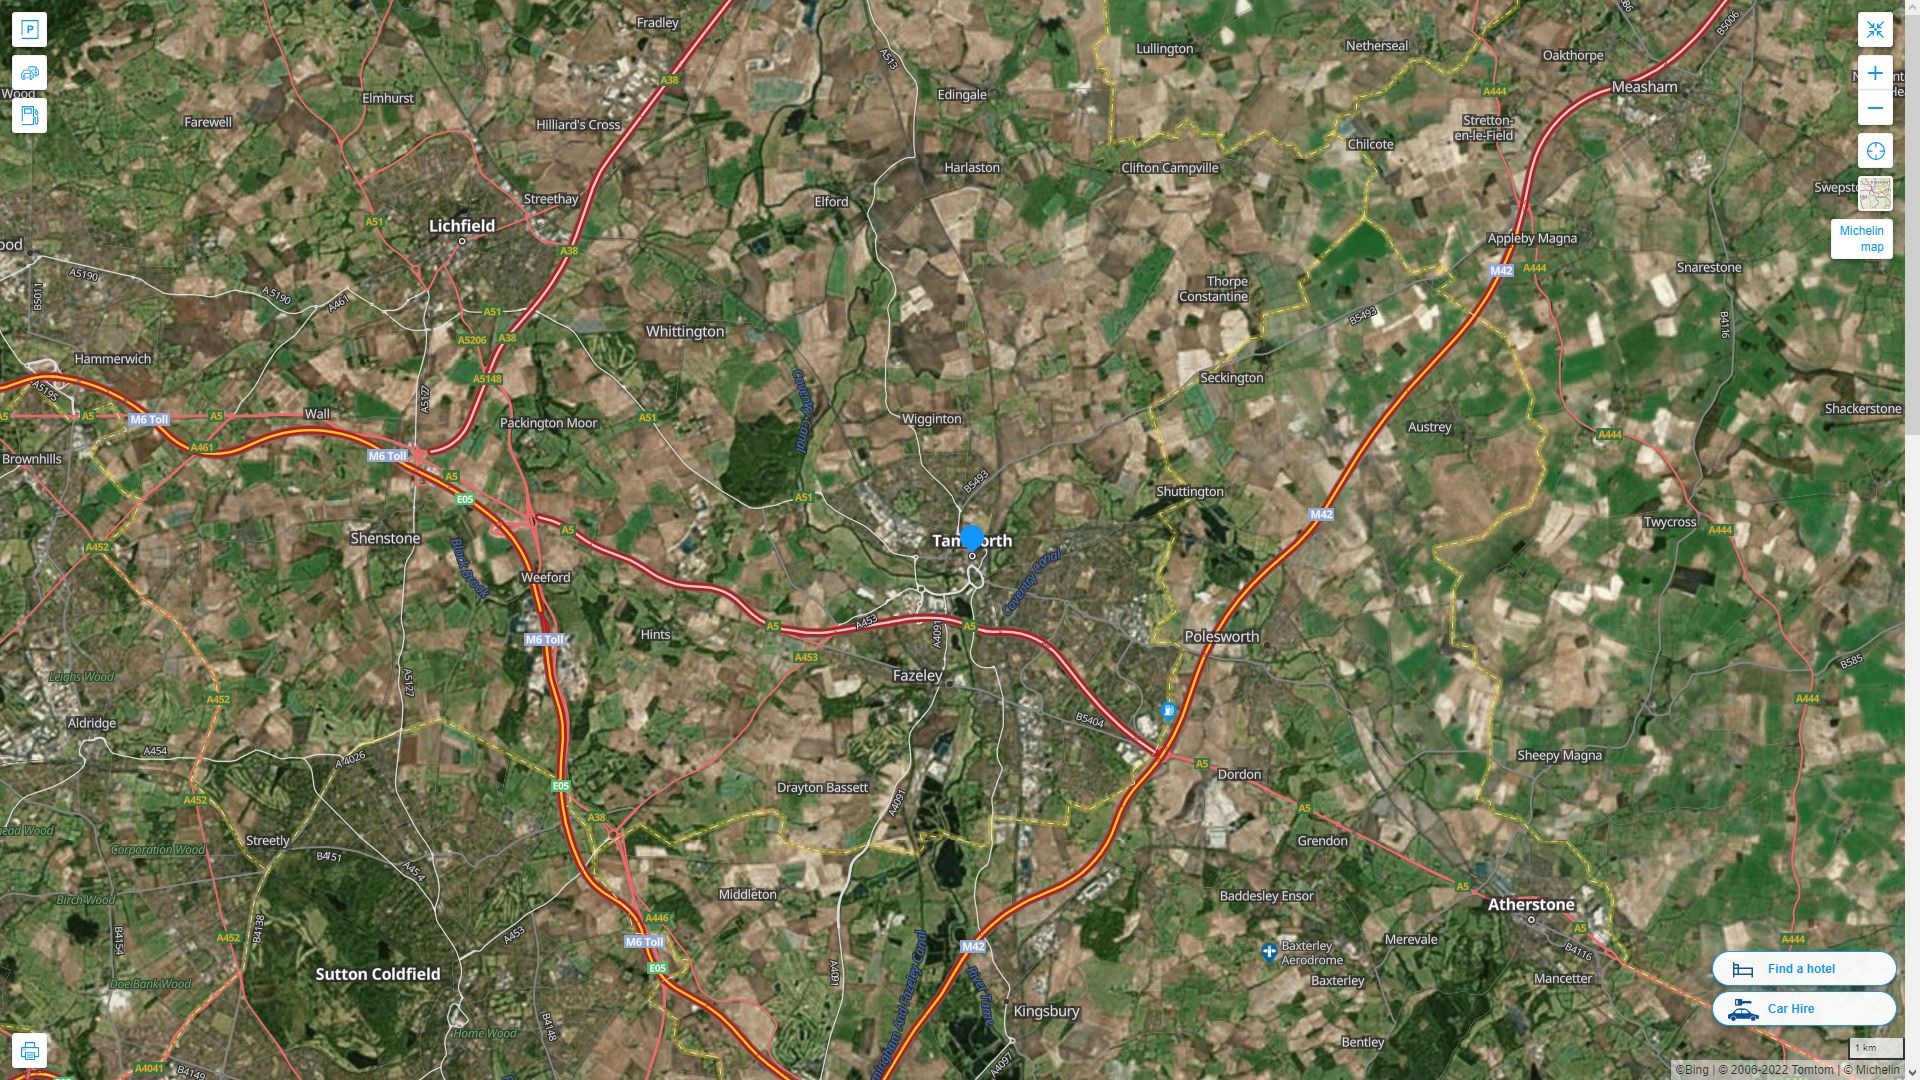 Tamworth Royaume Uni Autoroute et carte routiere avec vue satellite